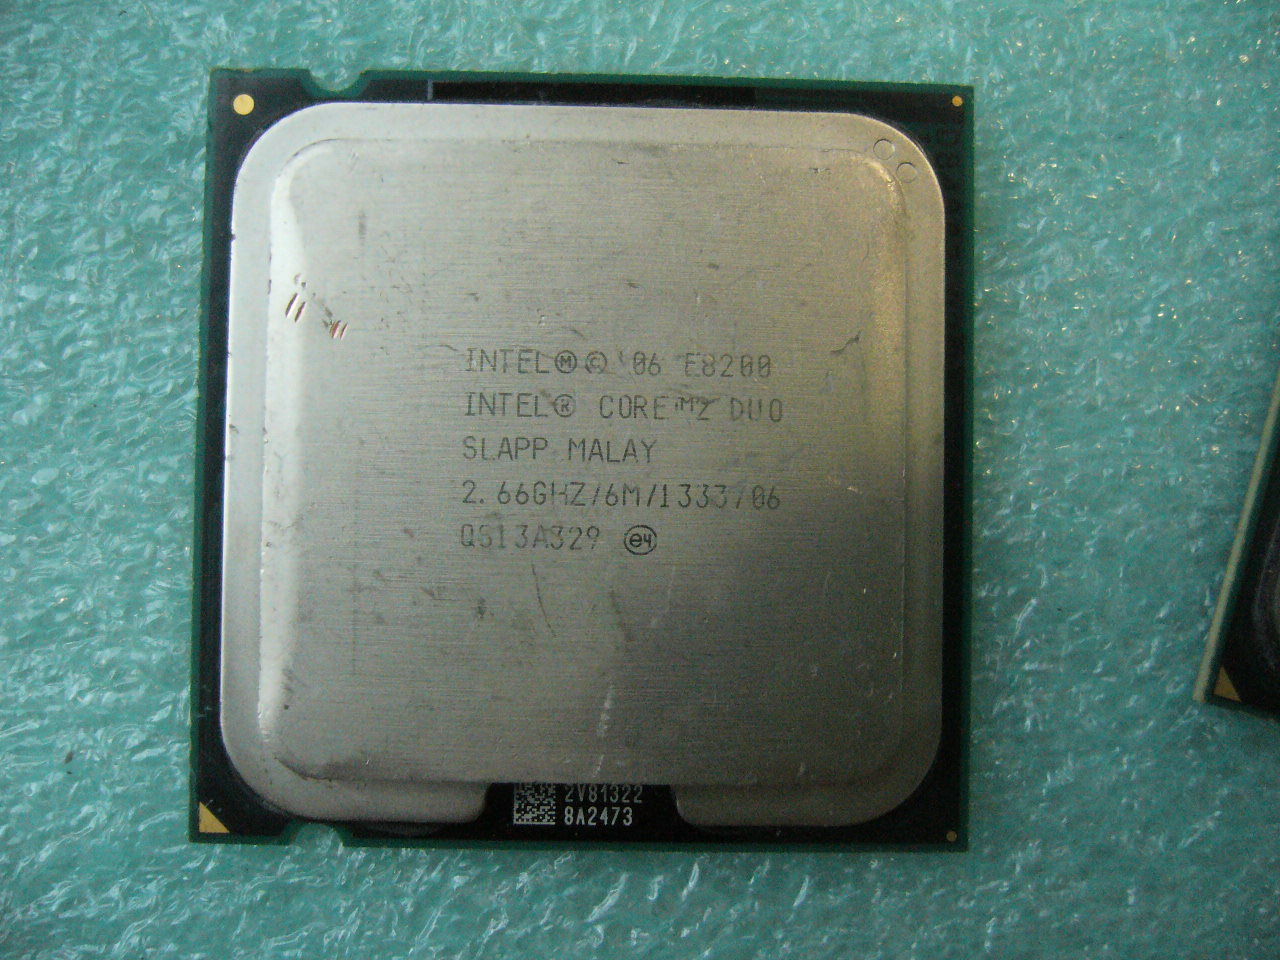 QTY 1x INTEL Core 2 Duo E8200 CPU 2.66GHz 6MB/1333Mhz LGA775 SLAPP